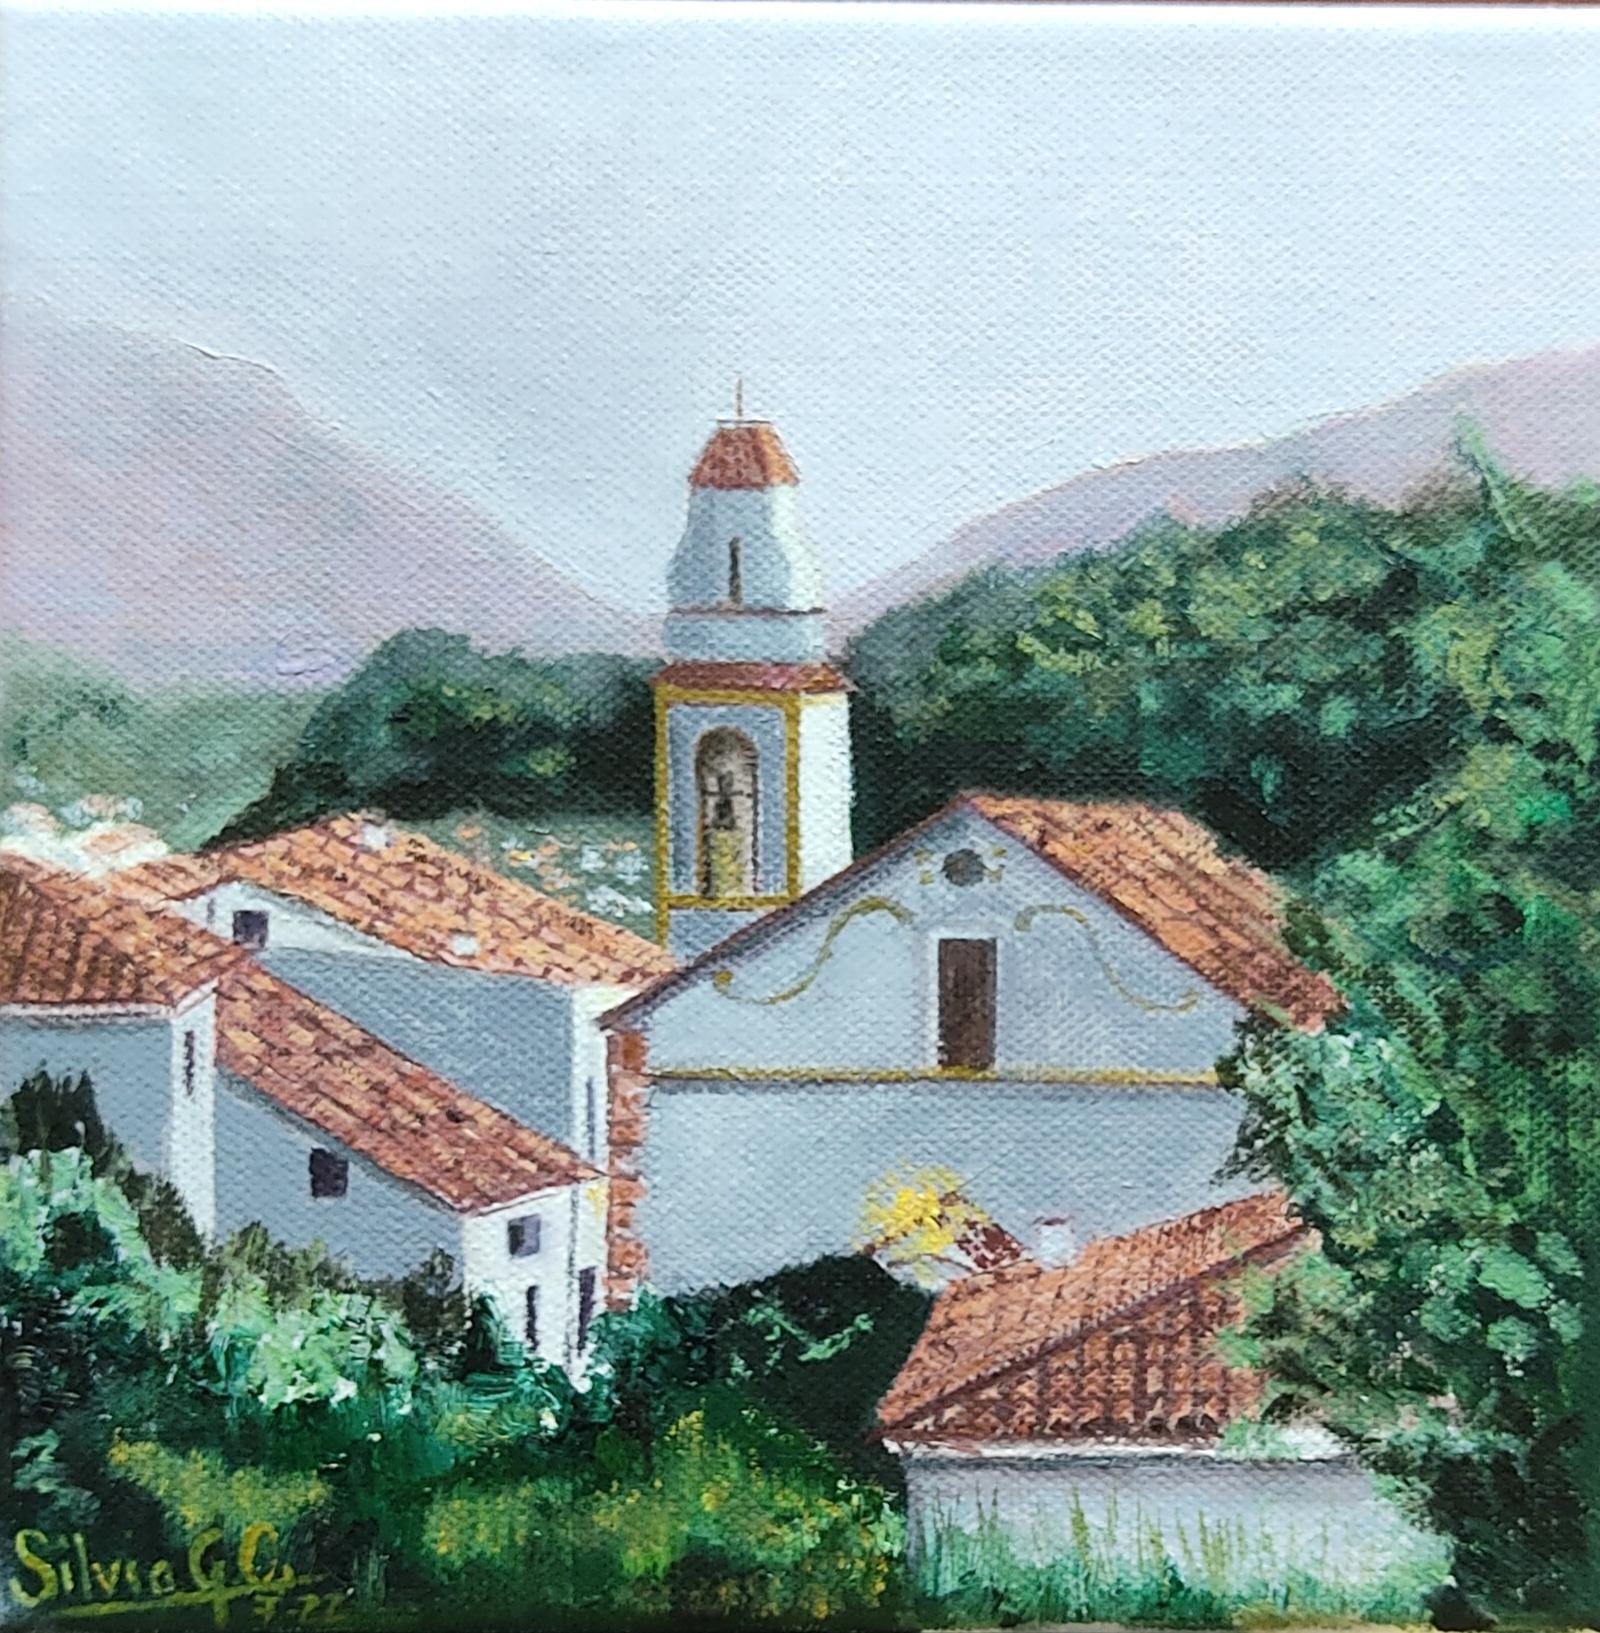 The farmhouse of Montanejos